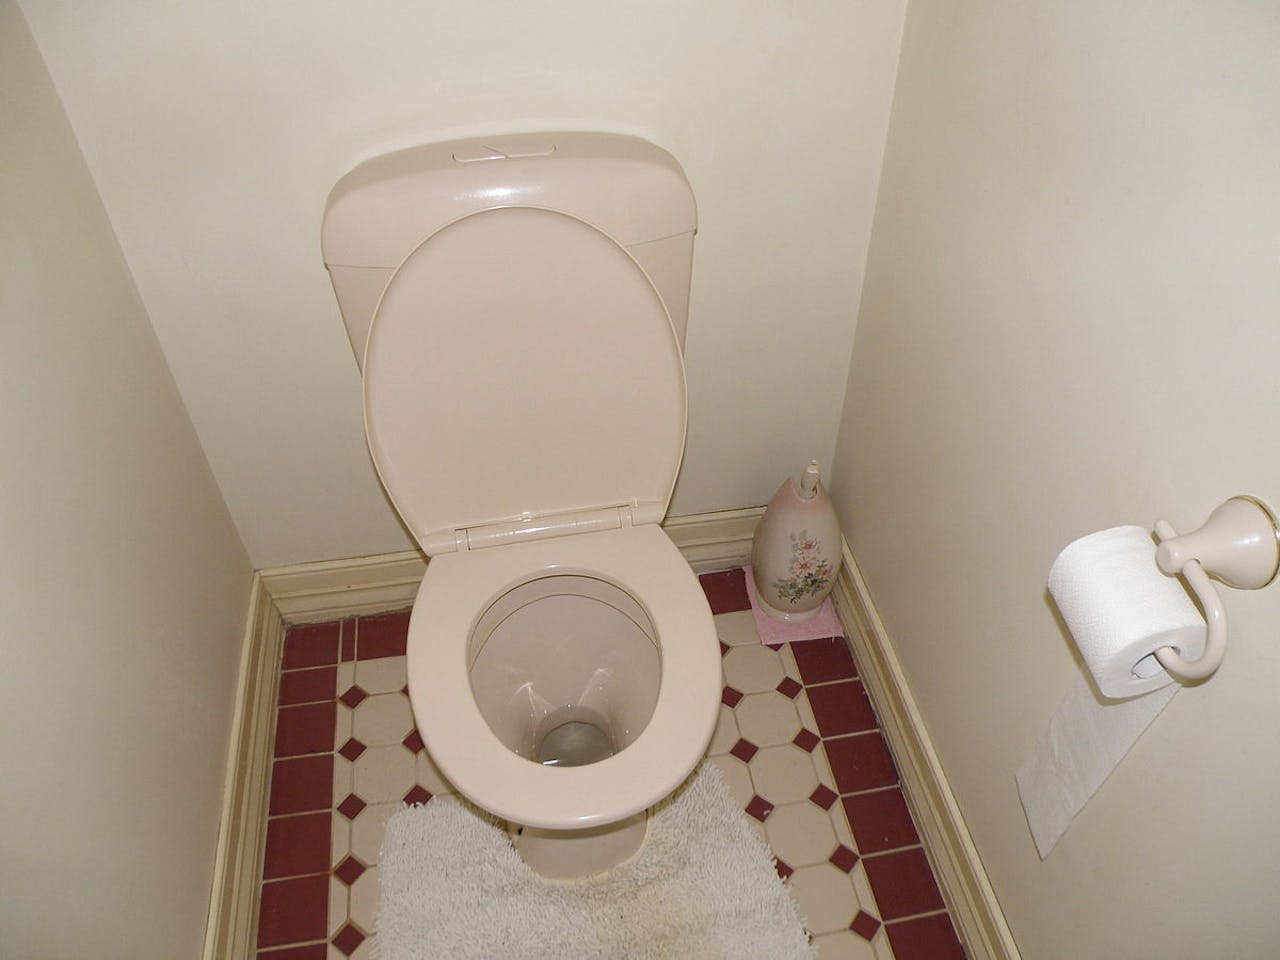 Een toilet met de klep omhoog.